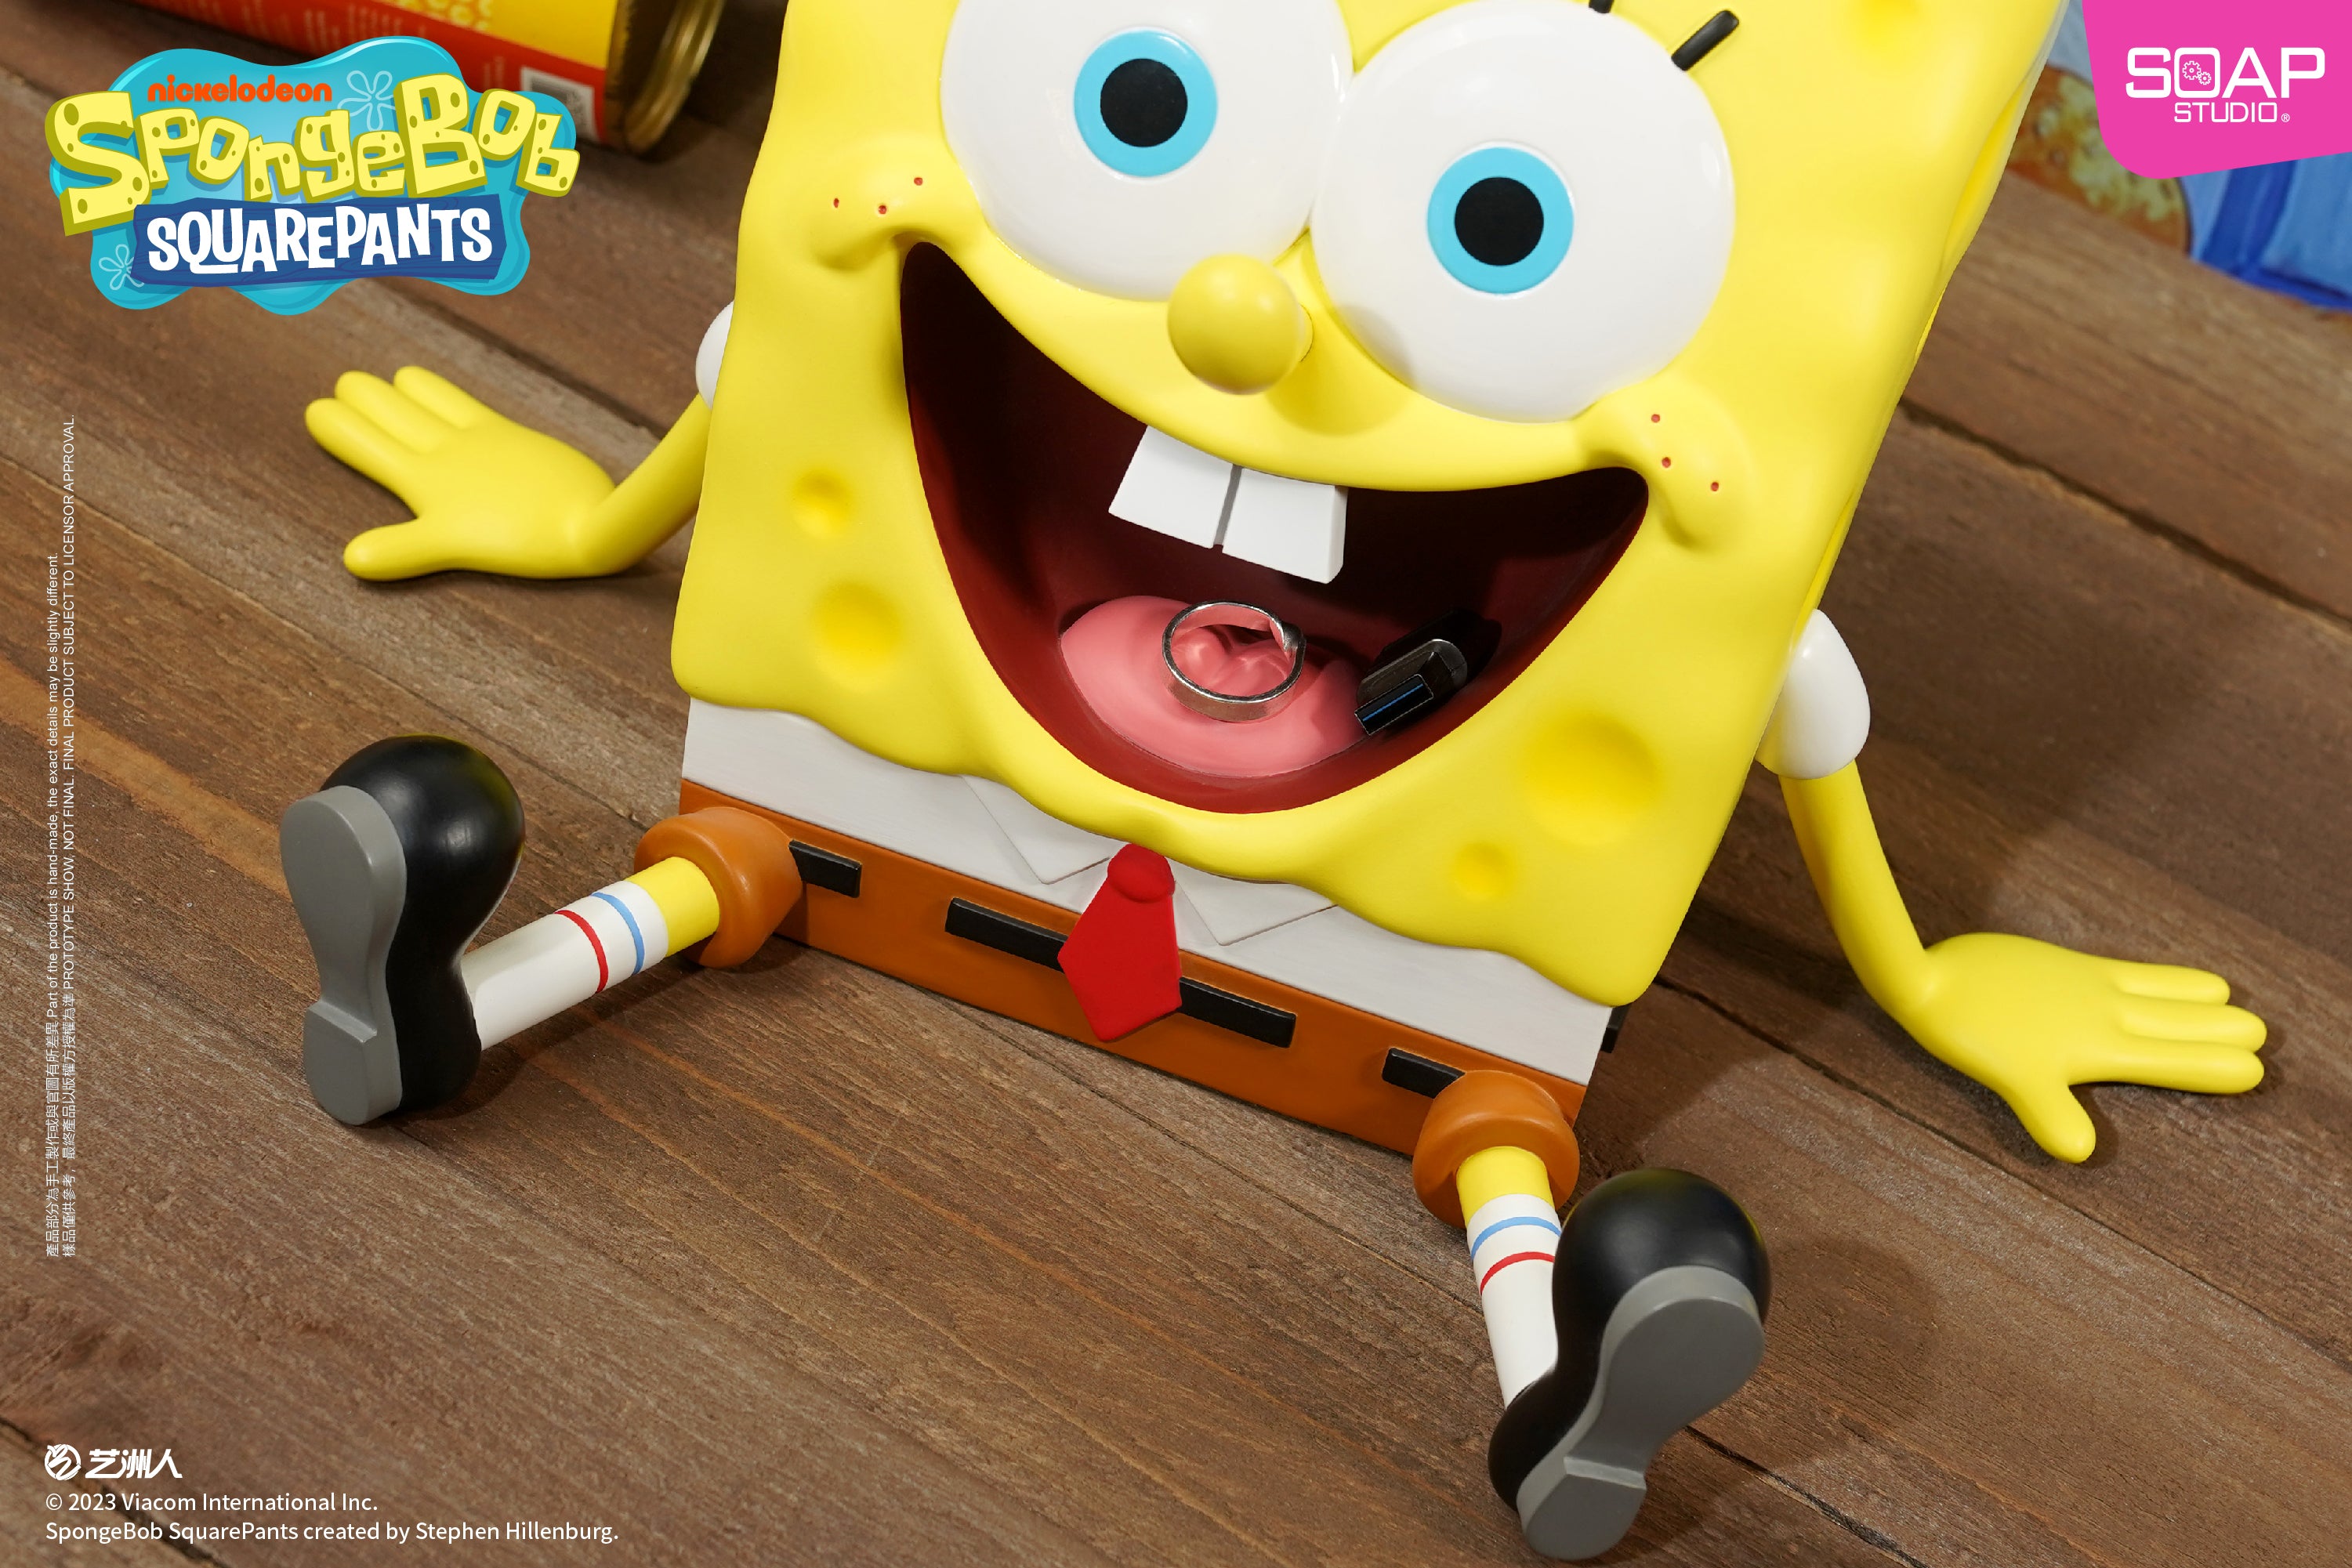 Soap Studio NS009 SpongeBob SquarePants - Big Eater SpongeBob